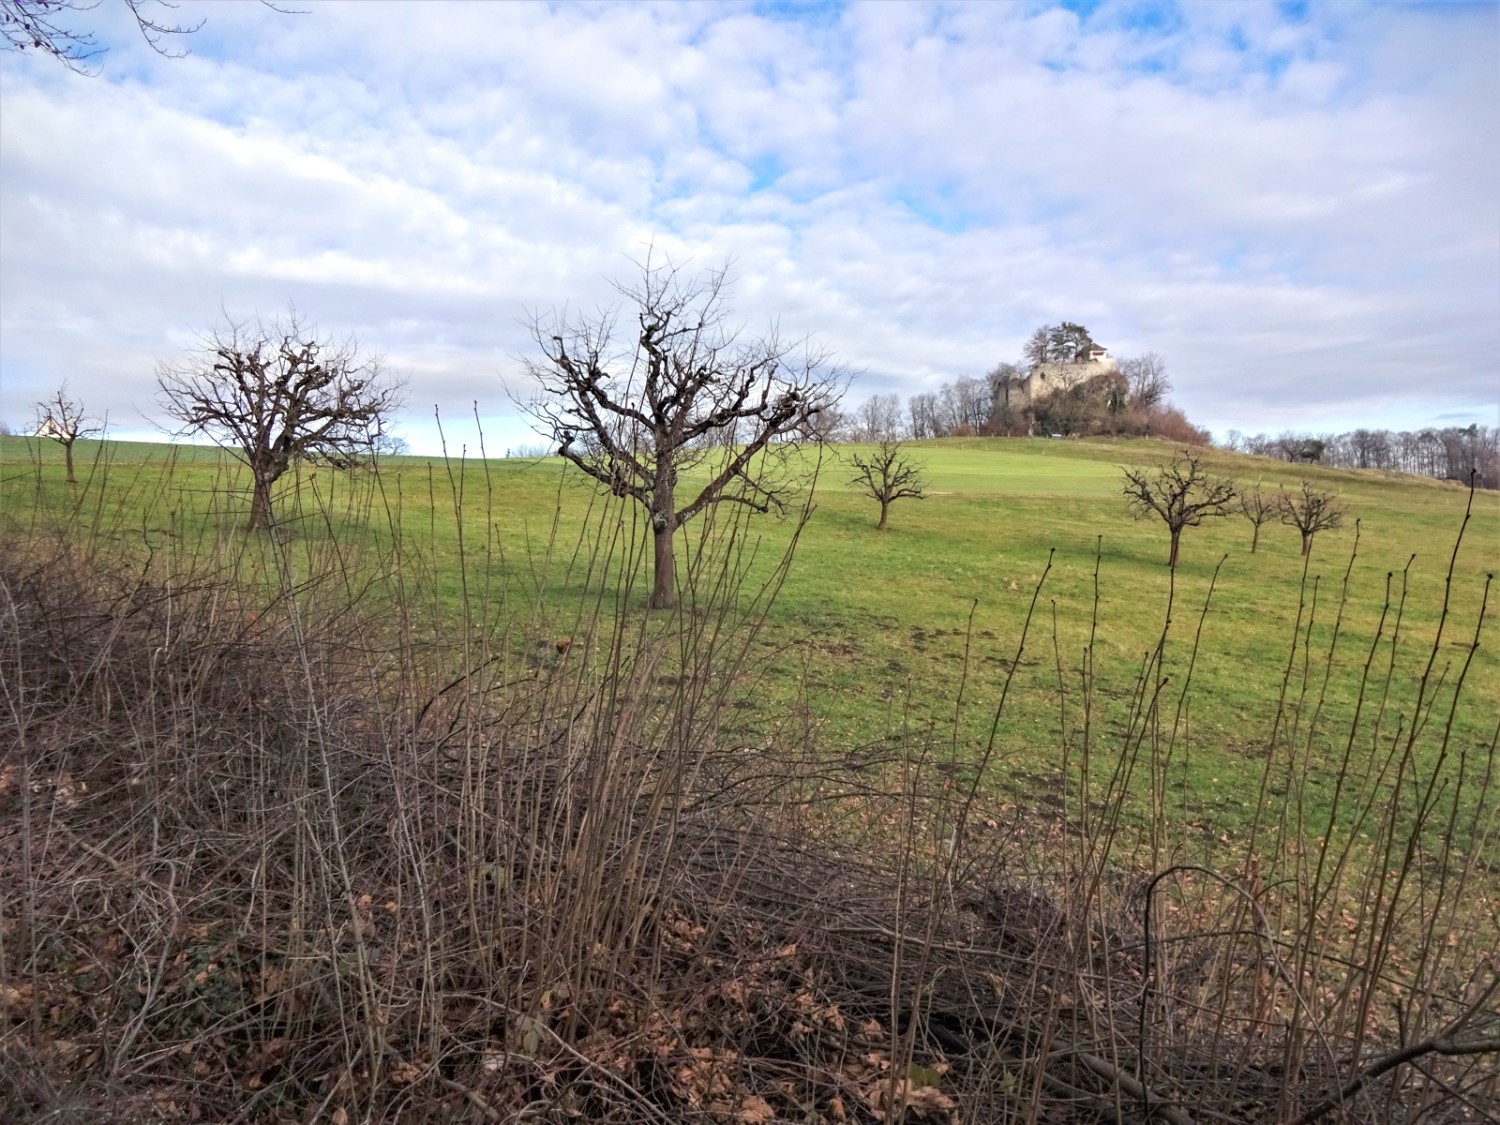 Les ruines de l’ancien château Neu Schauenburg trônent sur la colline. Photo : Miroslaw Halaba